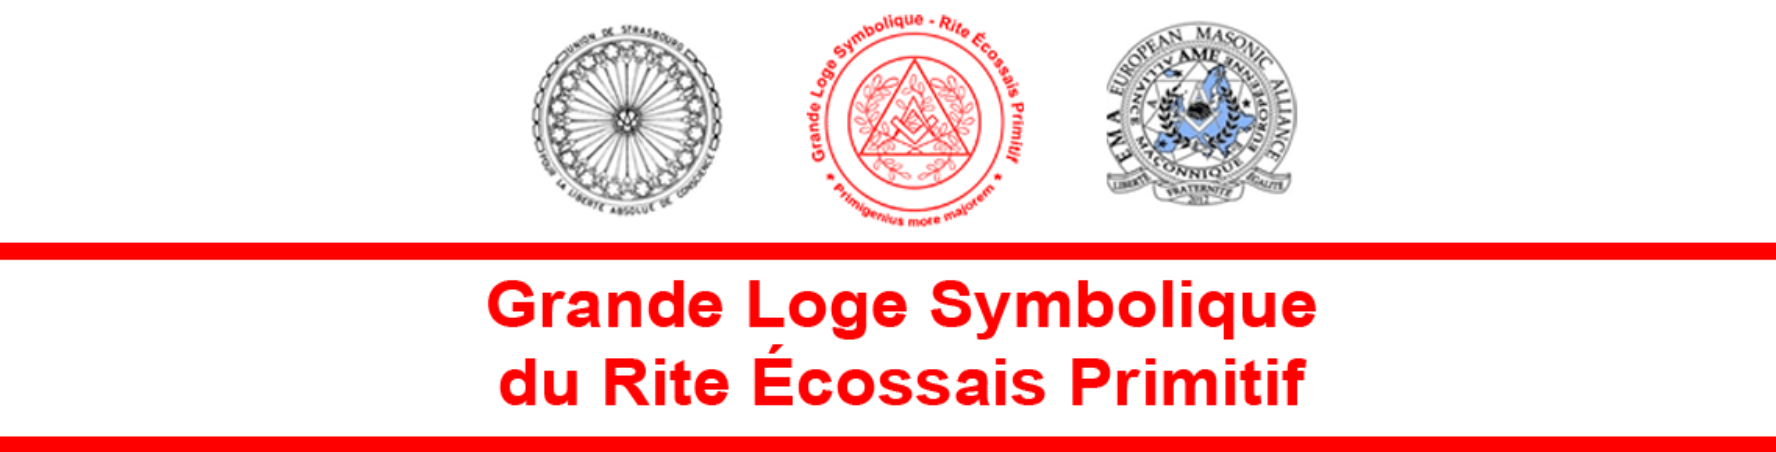 Bandeau GLSREP - Grande Loge Symbolique travaillant au Rite Écossais Primitif